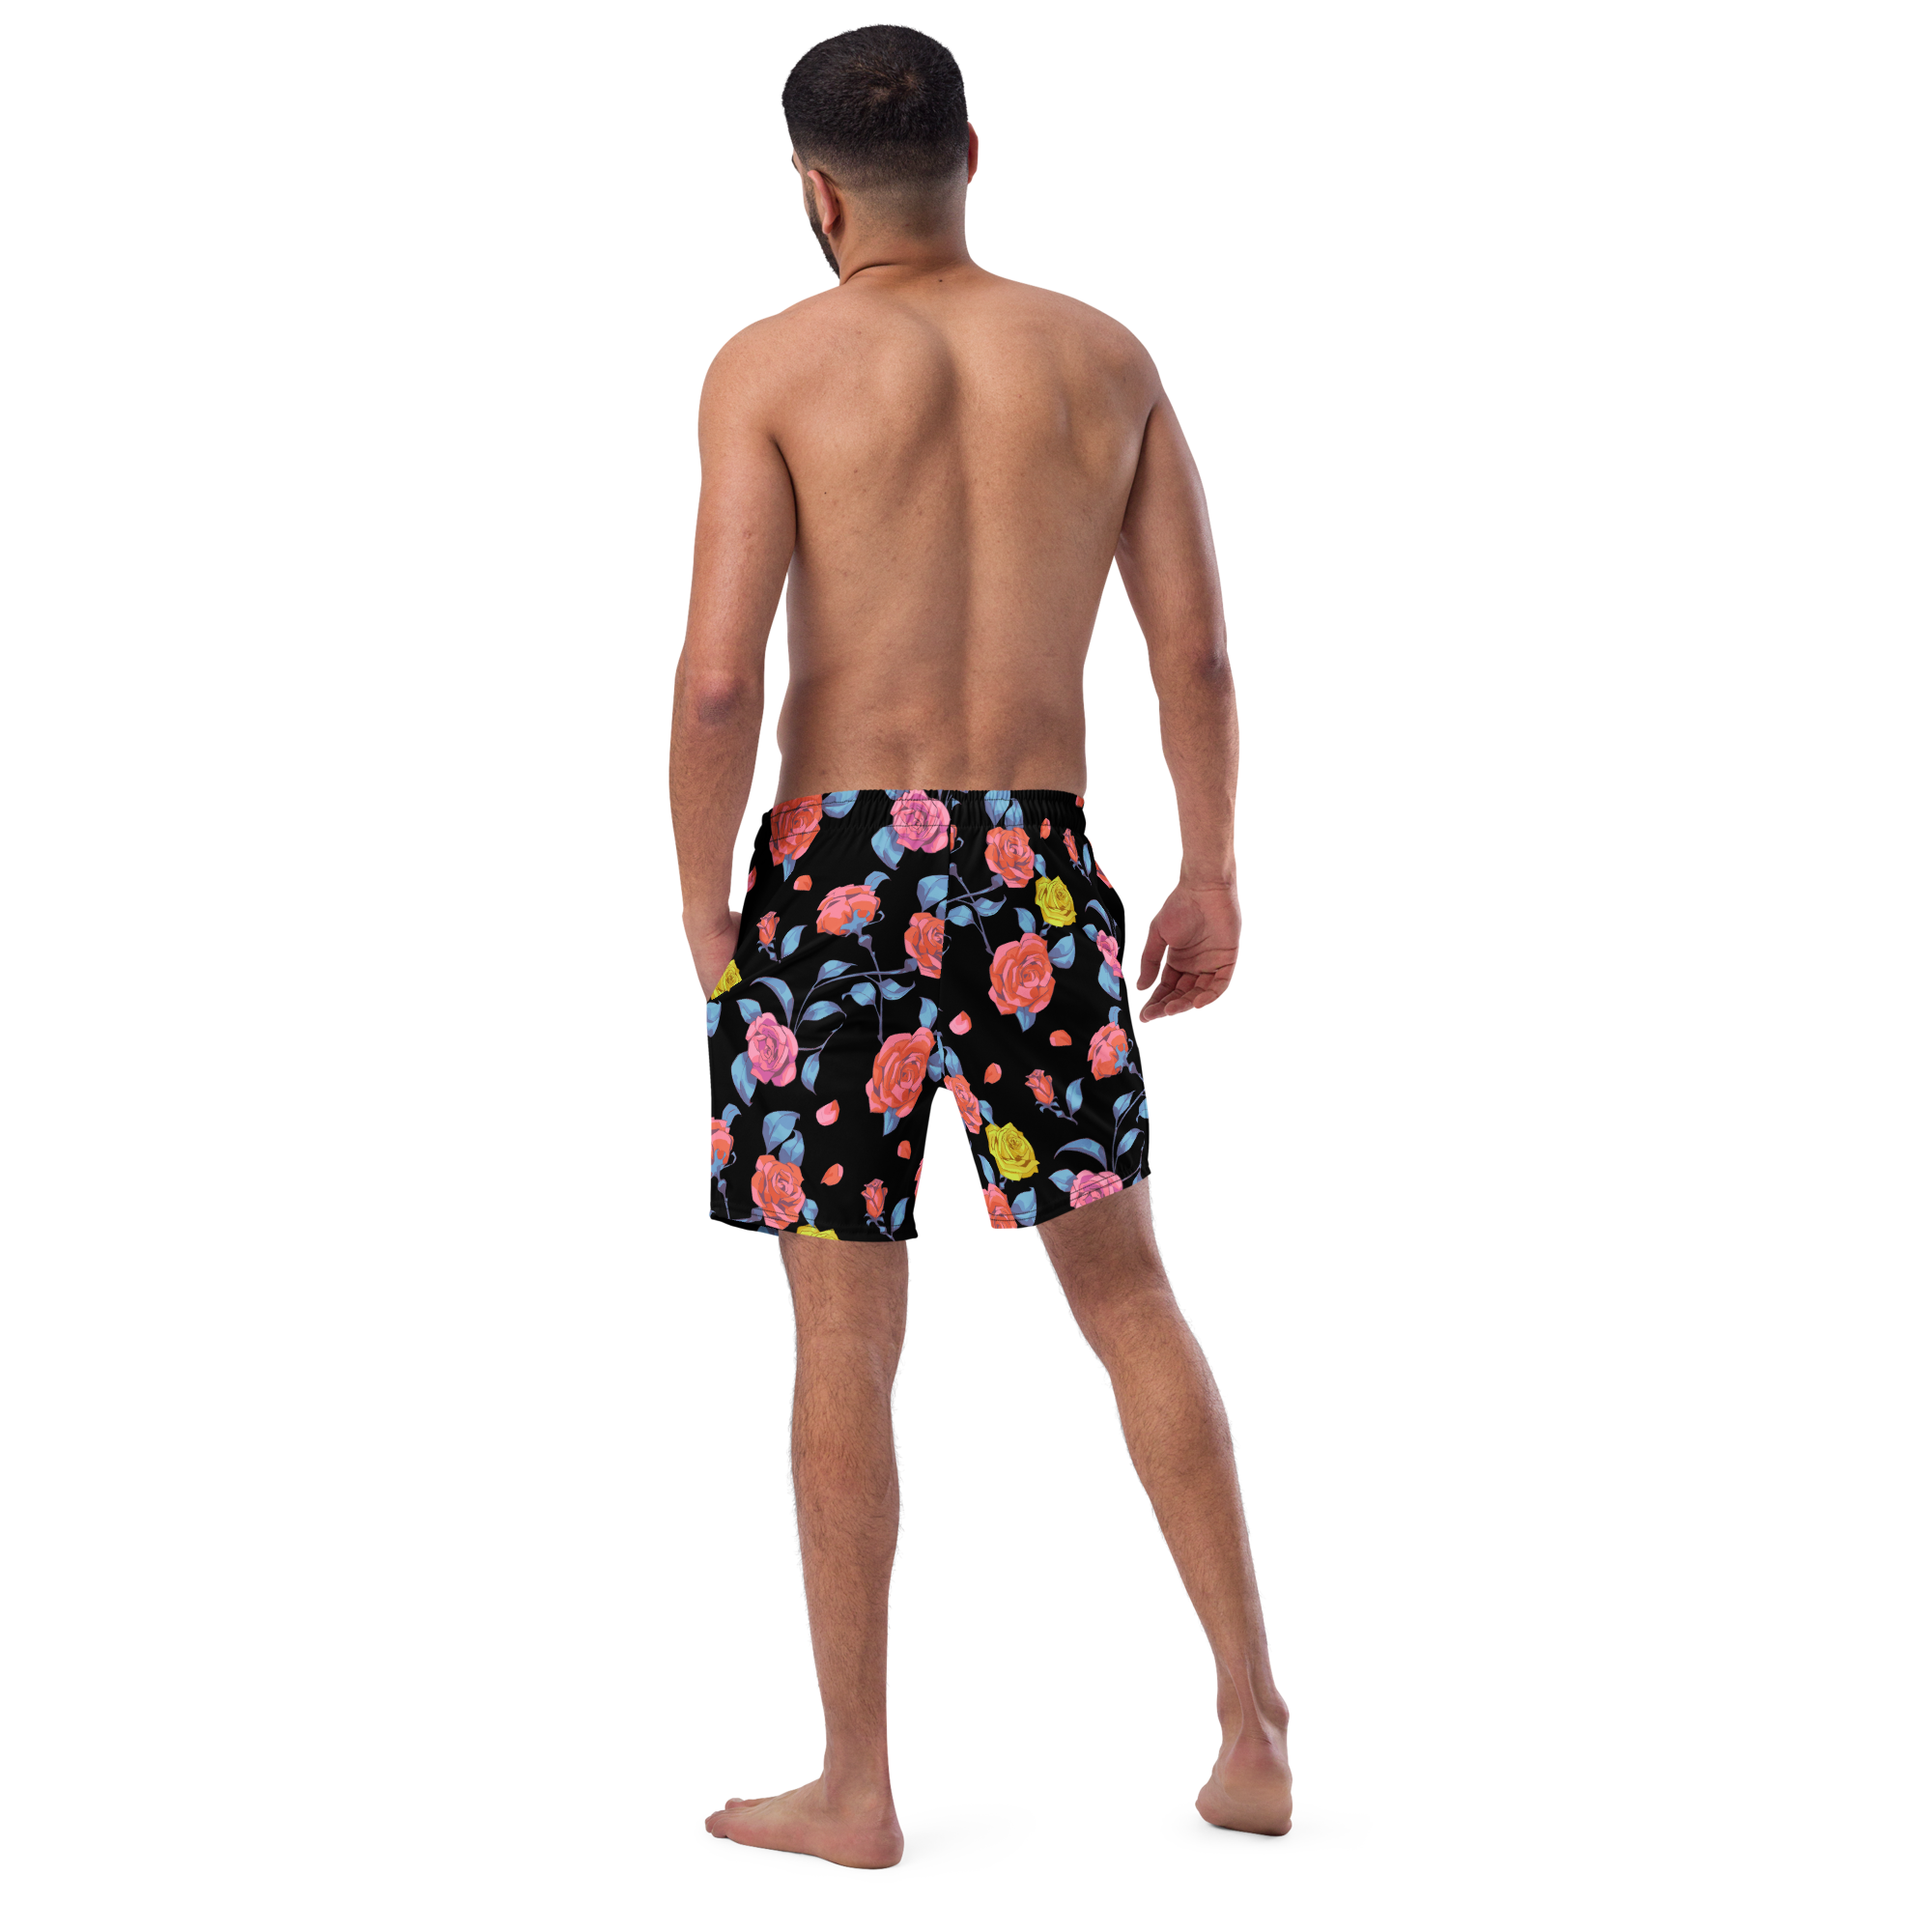 Roses - Men's swim trunks